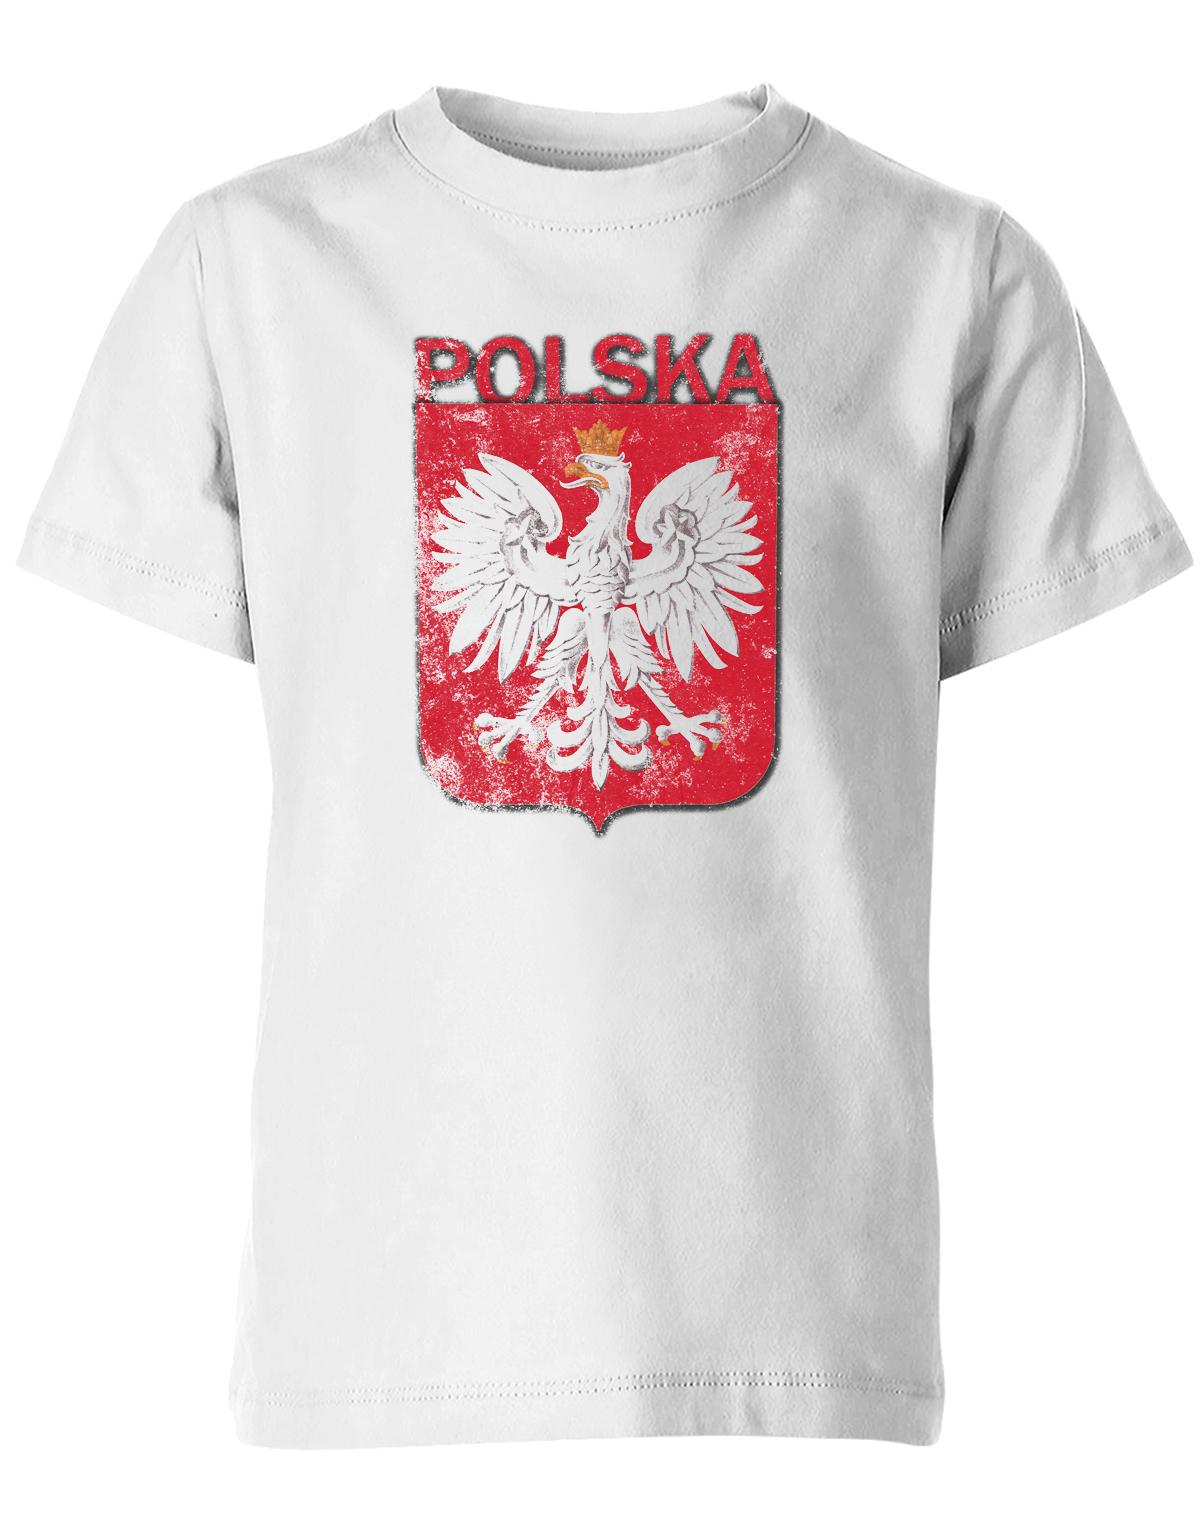 Polska-Vintage-Kinder-Shirt